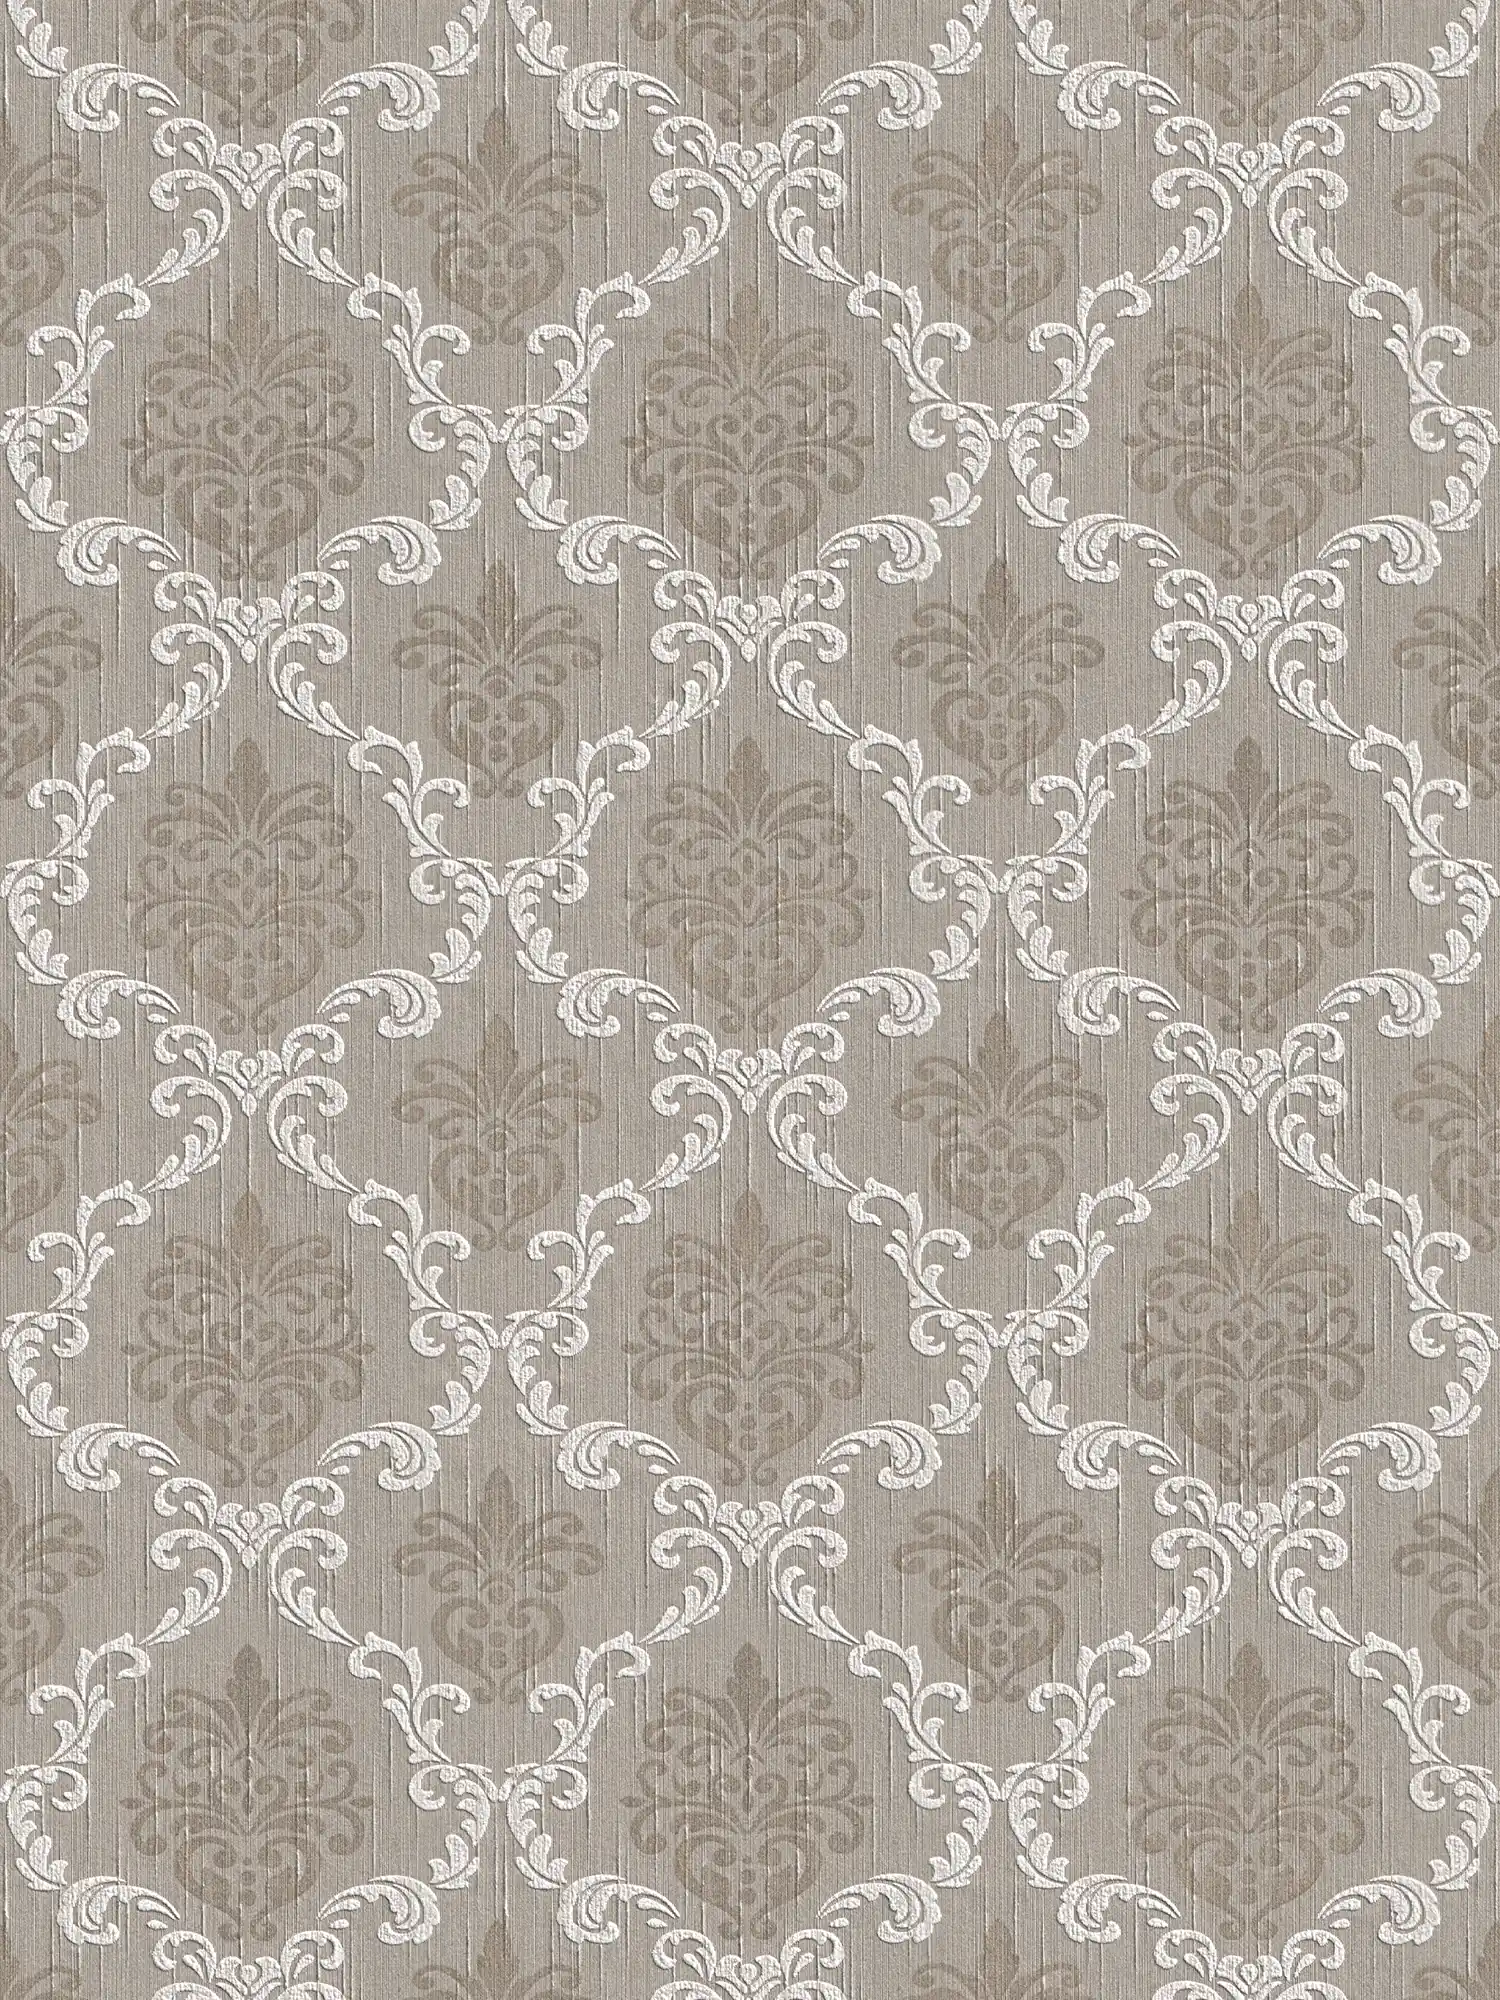 Papel pintado no tejido con diseño ornamental en estilo colonial - beige, gris
